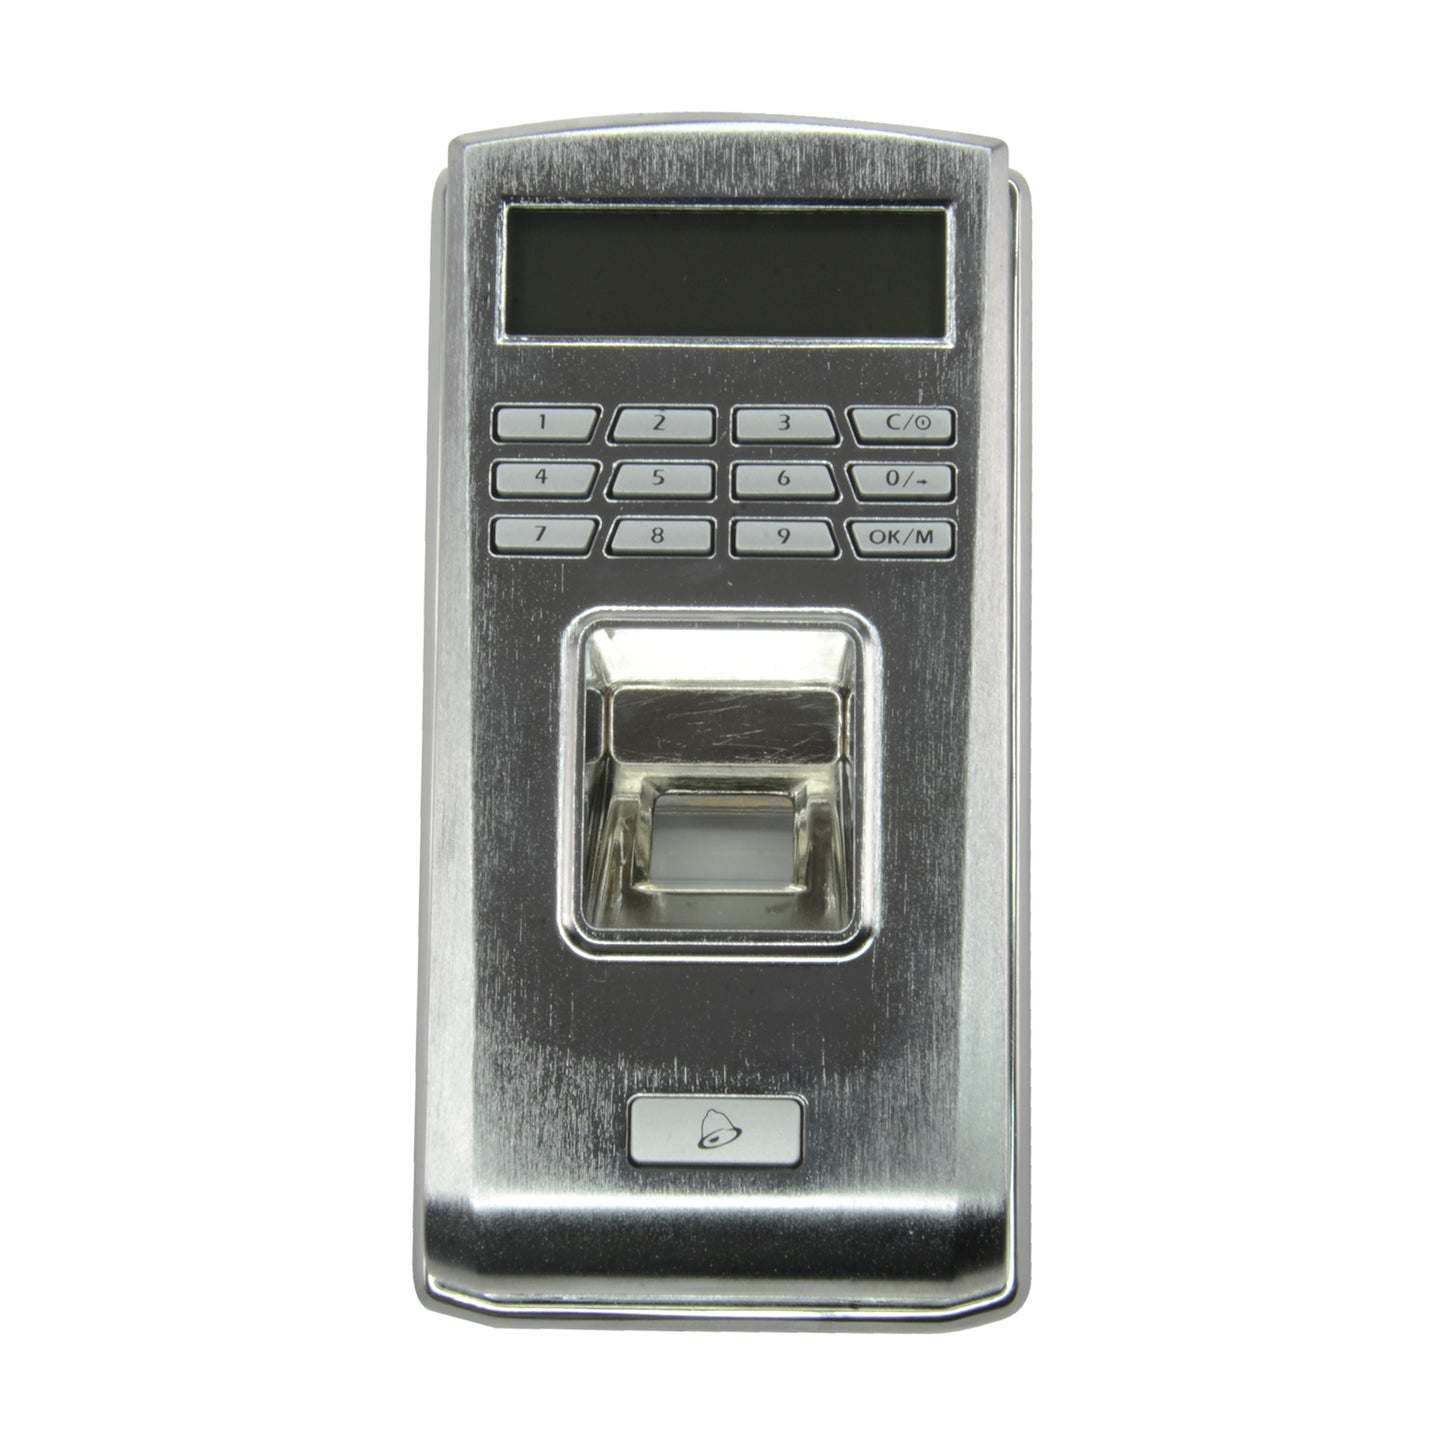 Lettore biometrico autonomo ANVIZ - impronte digitali e utente/password - 1000 registrazioni / 50000 registri - TCP/IP, RS485, miniUSB, Wiegand 26 - Controller integrato - Copertura esterna